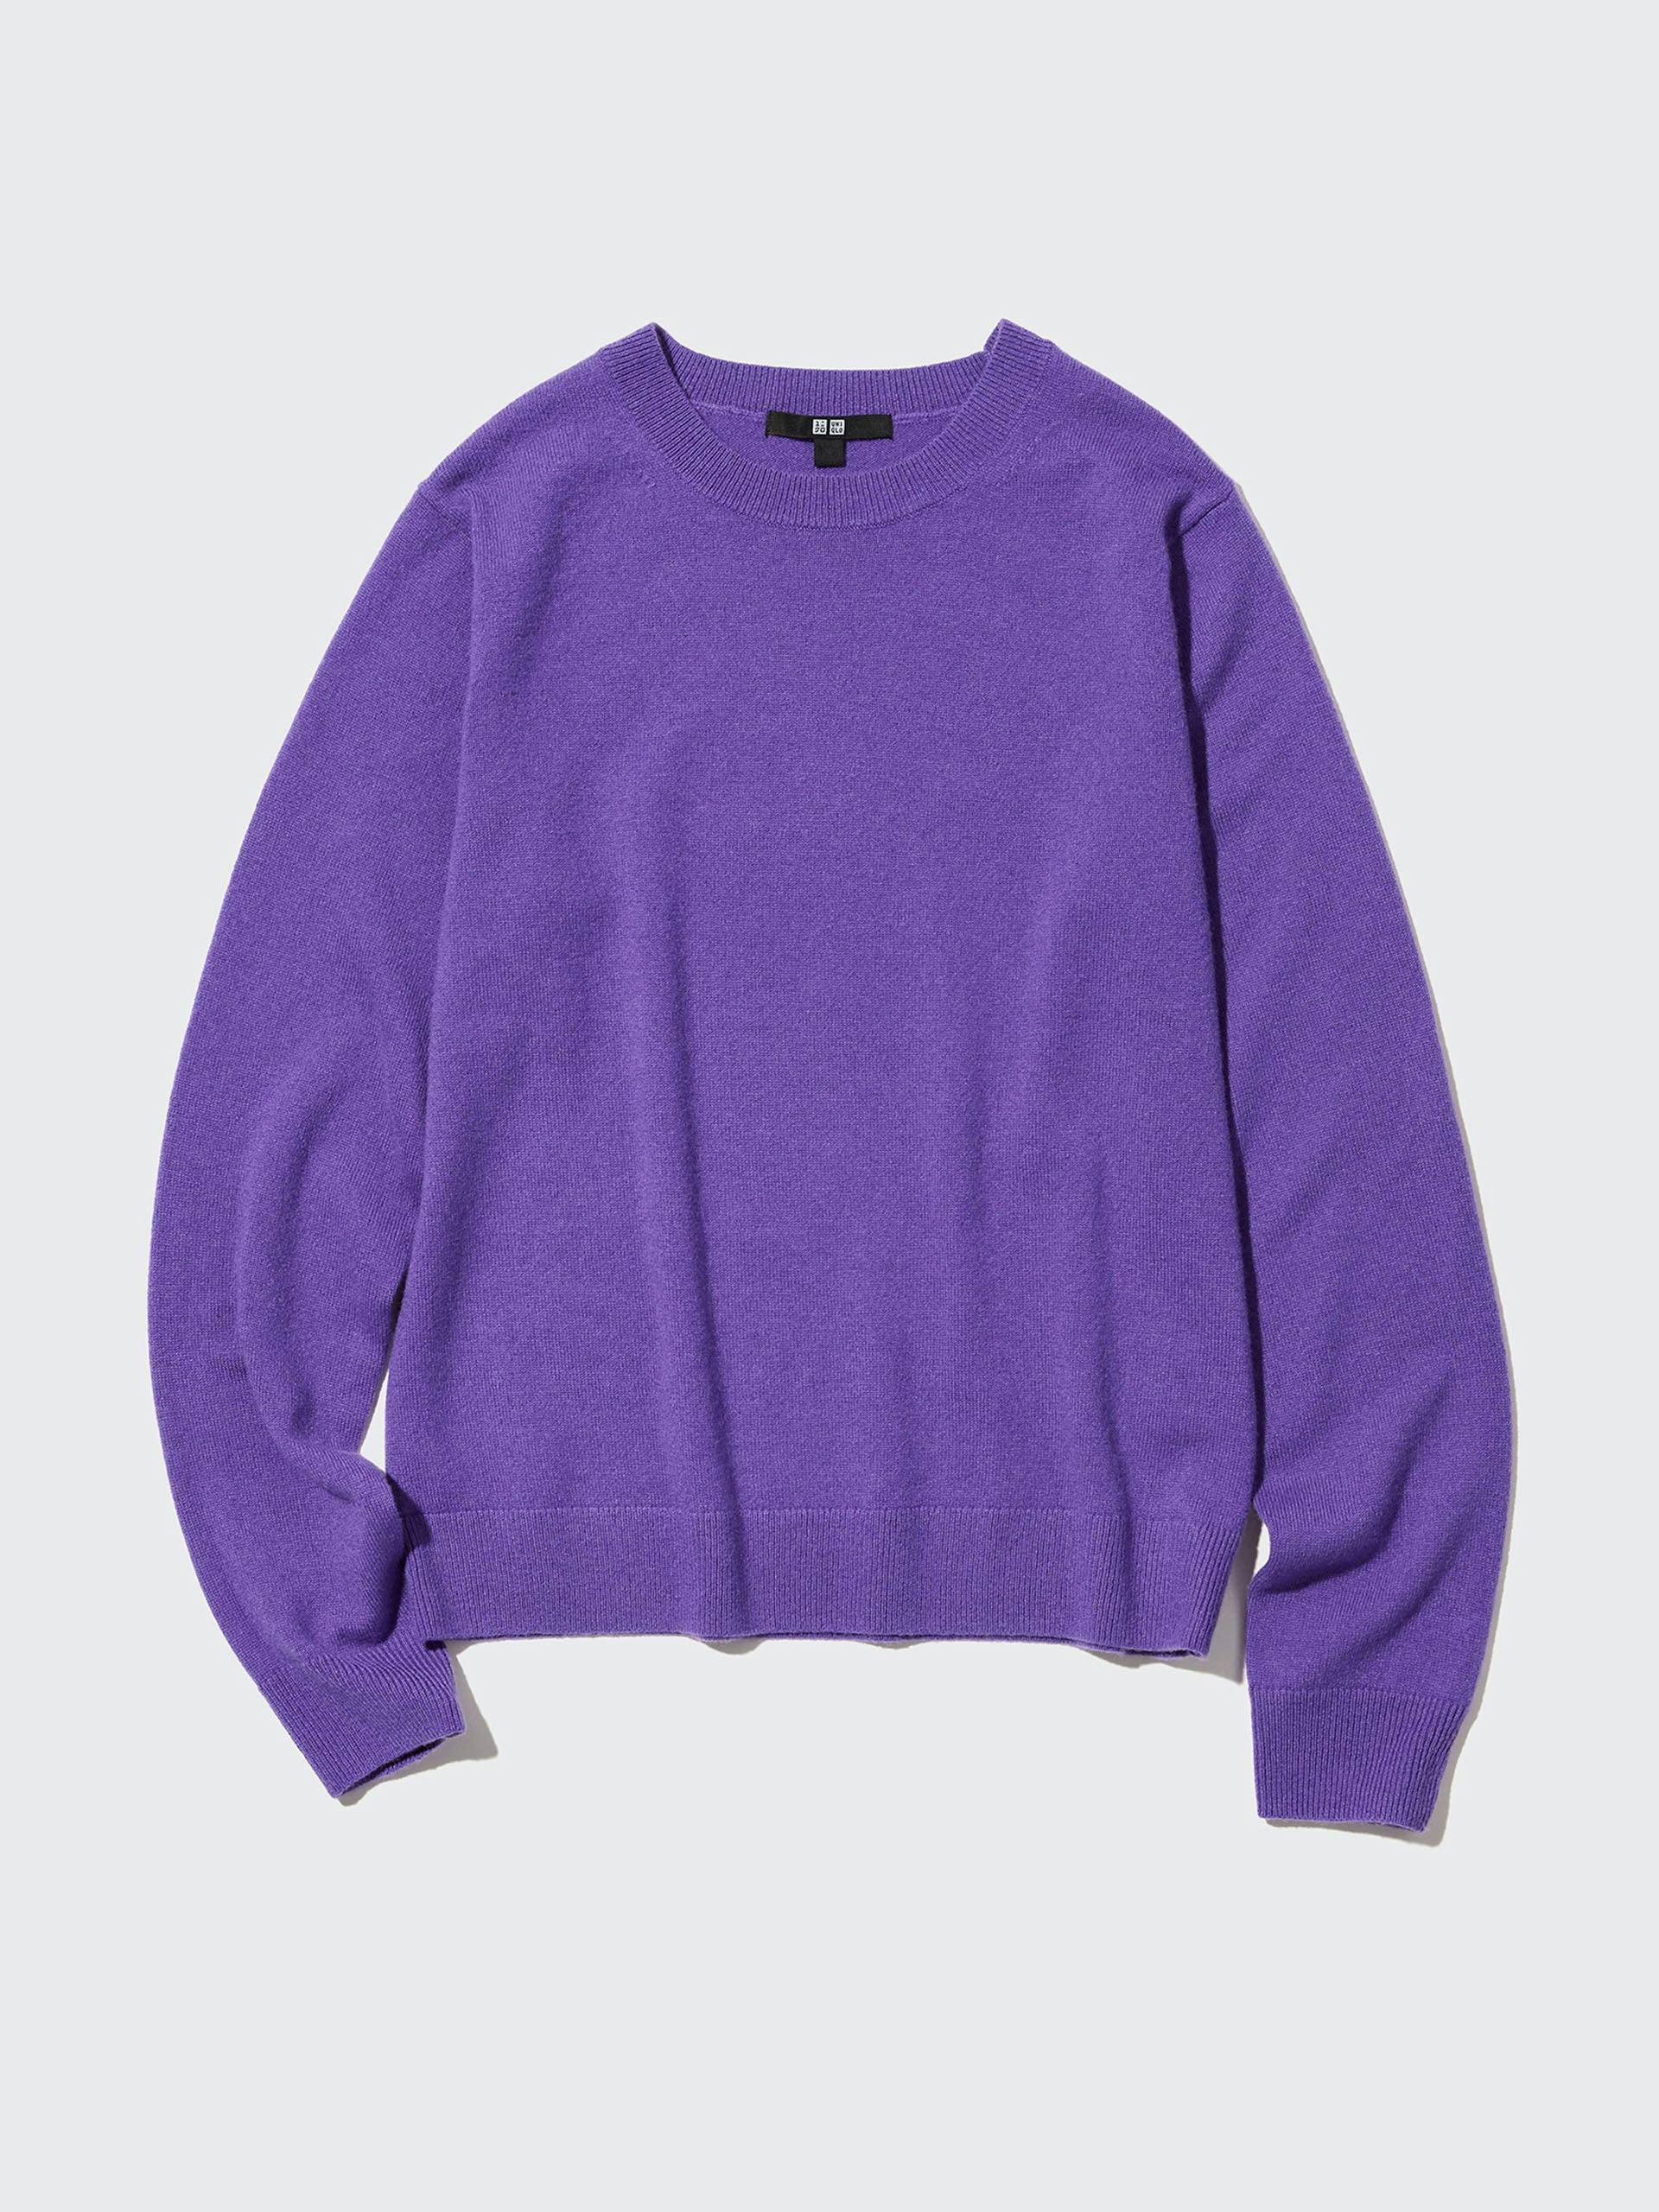 Cashmere jumper in purple